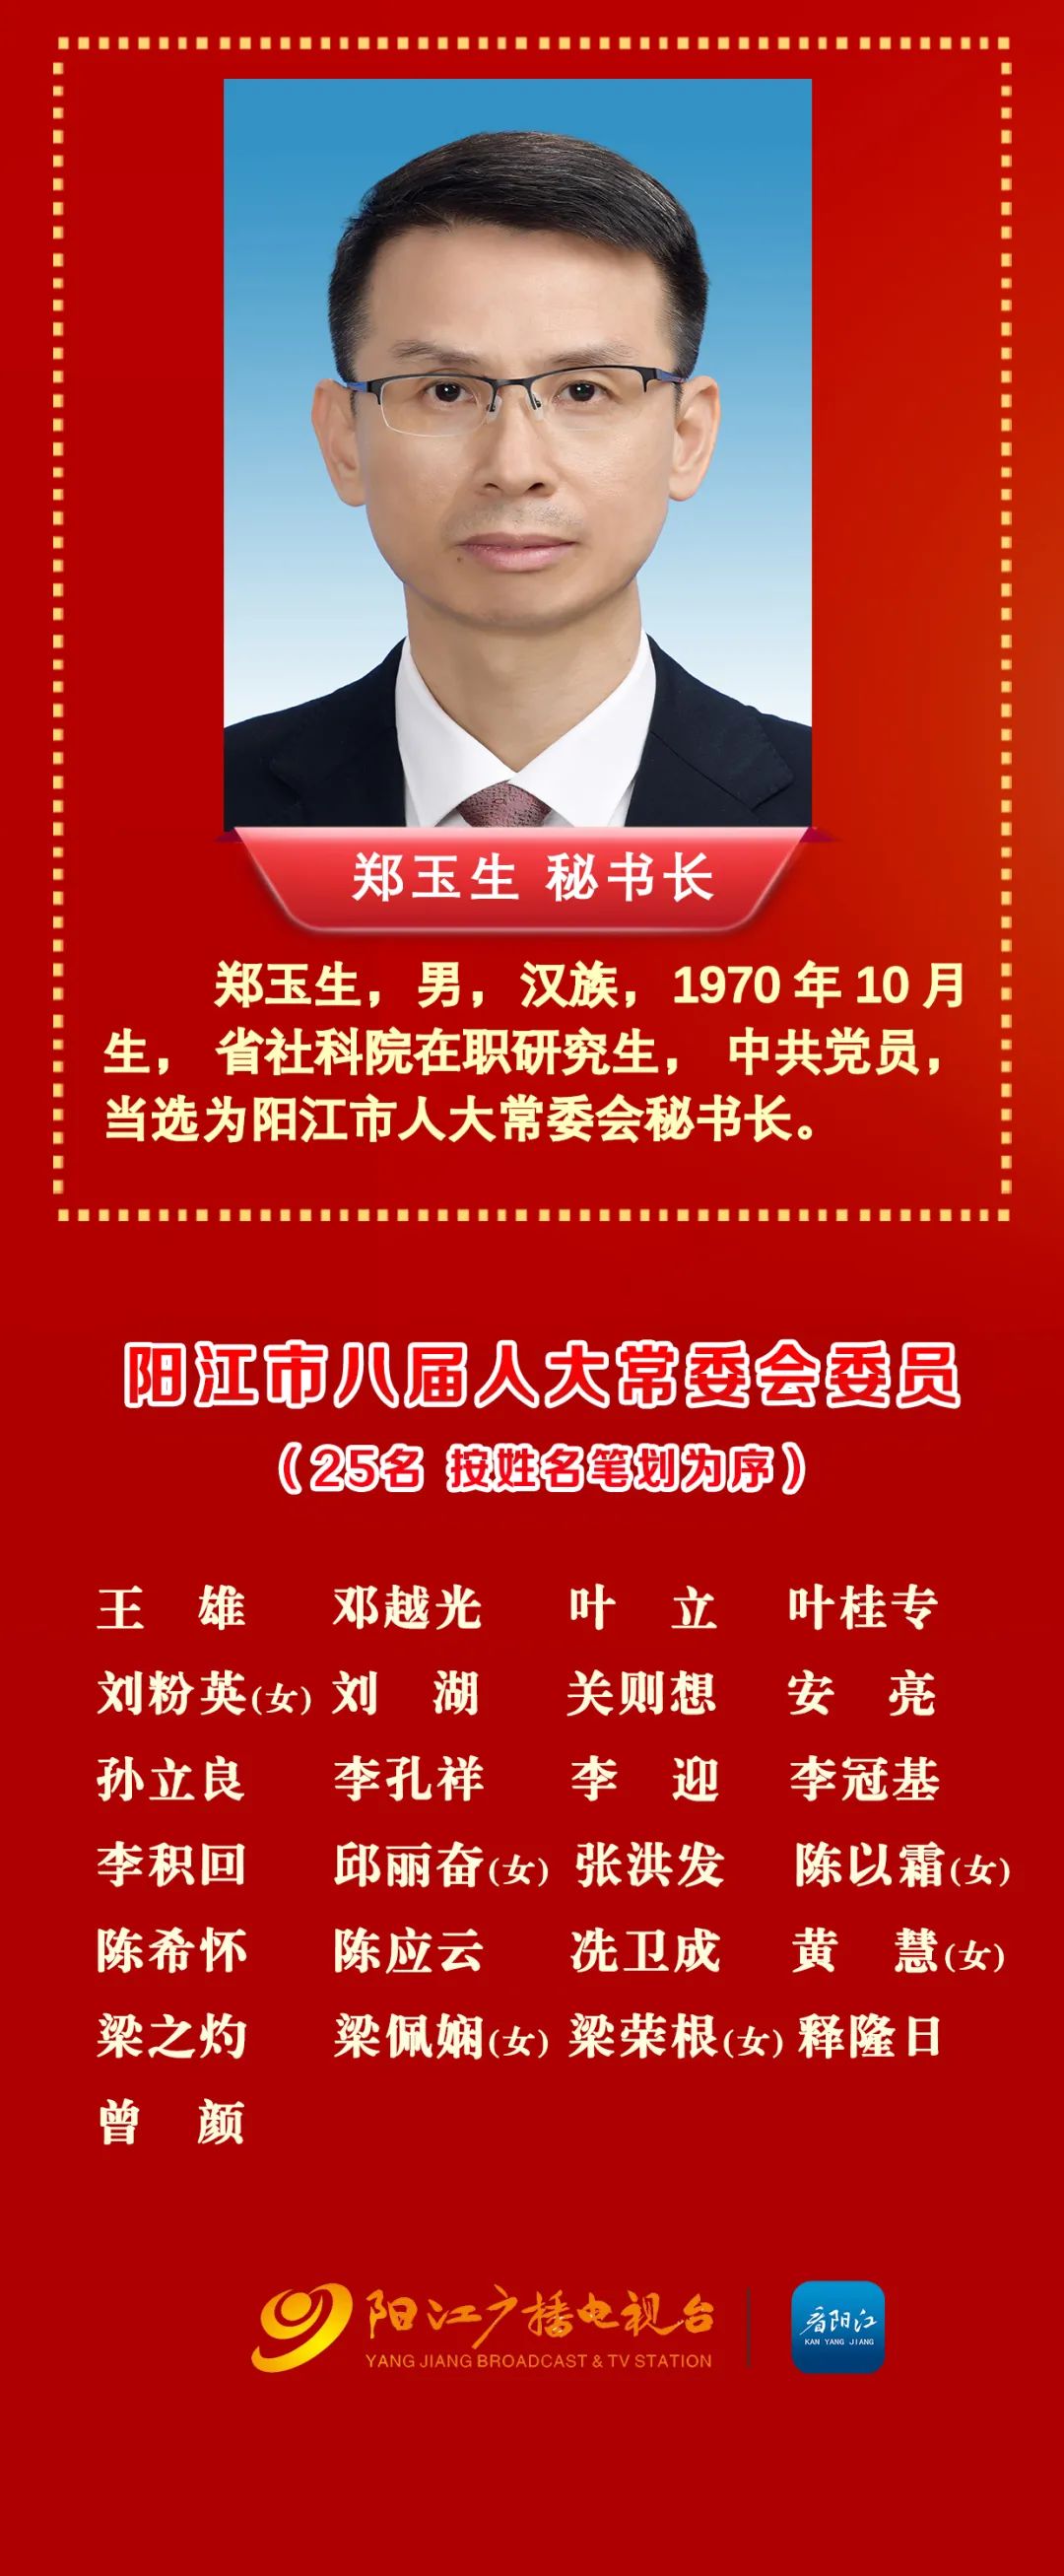 阳江市八届人大常委会主任副主任秘书长简历及委员名单